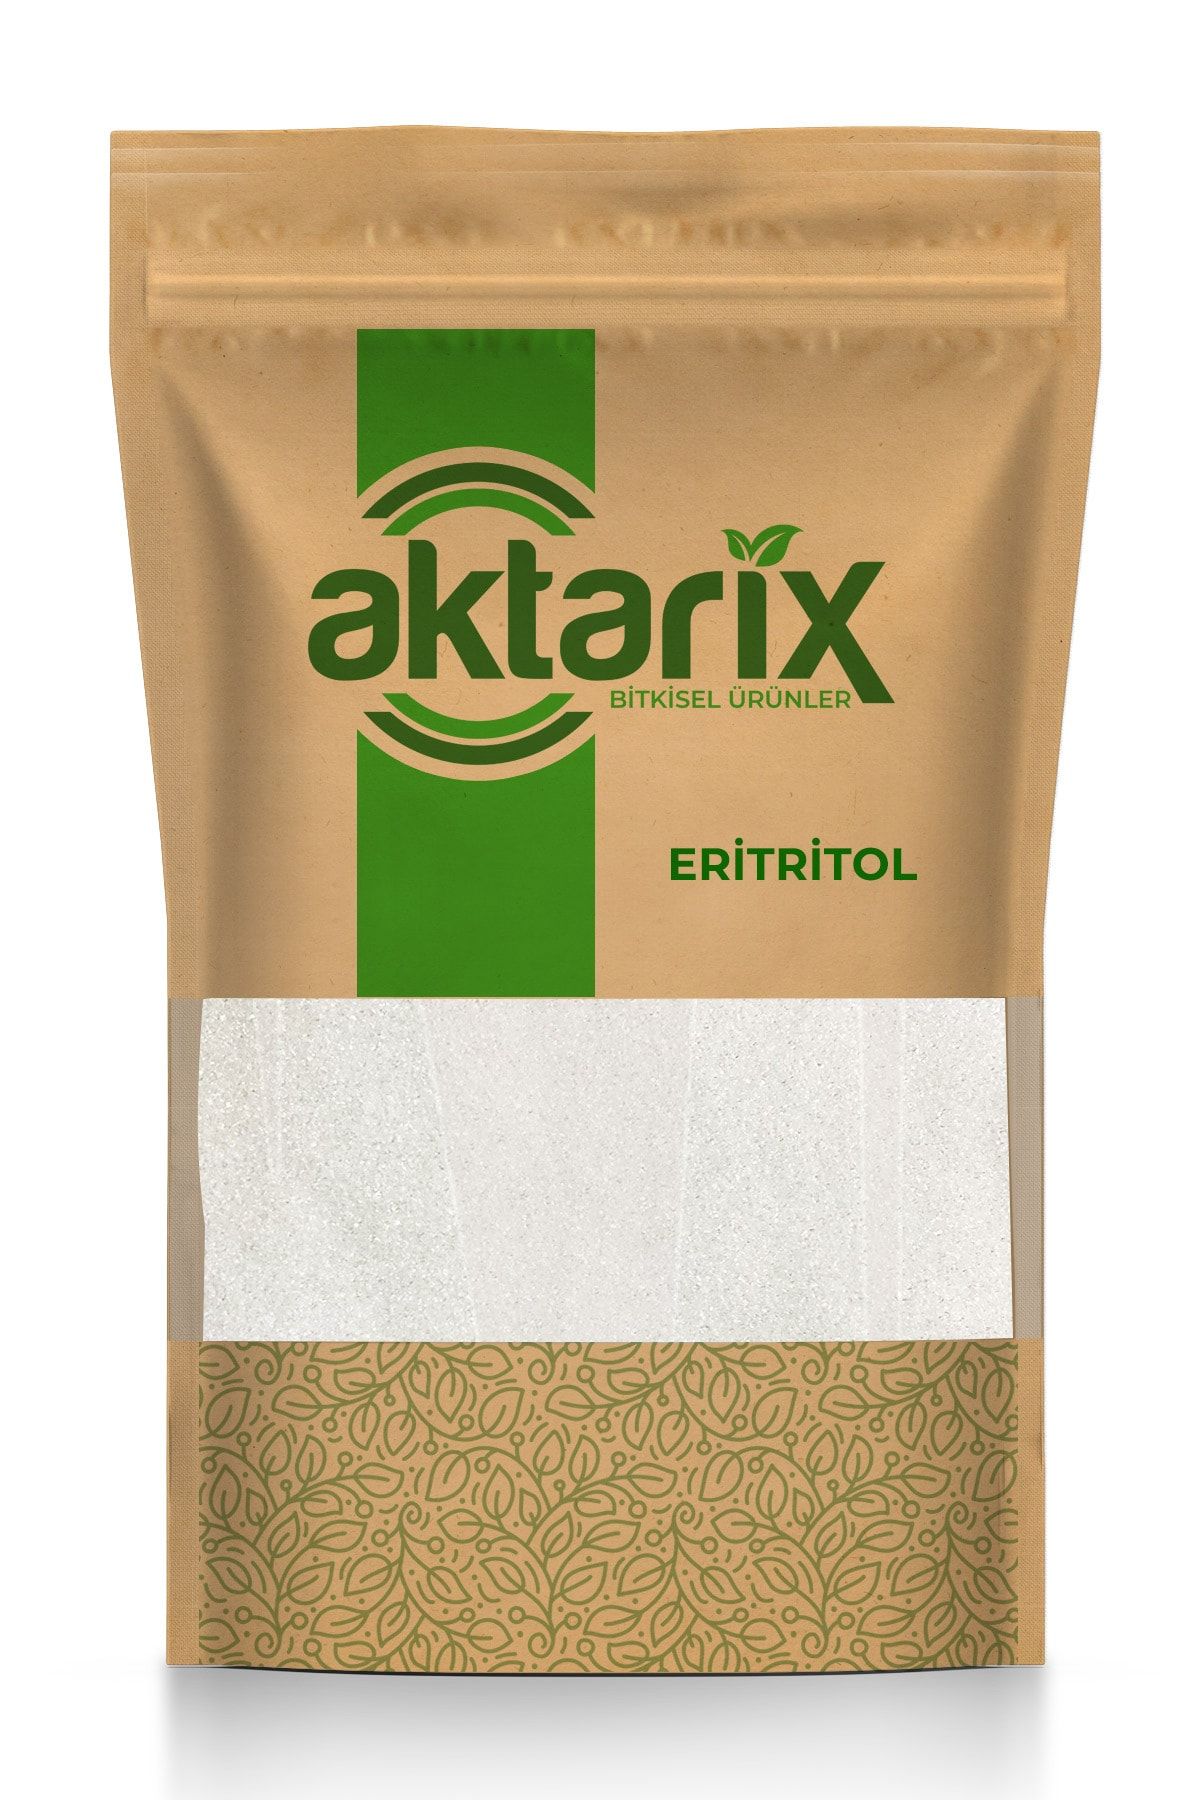 aktarix 2 Kg Eritritol ( Erythritol ) Tatlandırıcı Keto / Ketojenik / Vegan Diyete Uygundur 0 Kalori